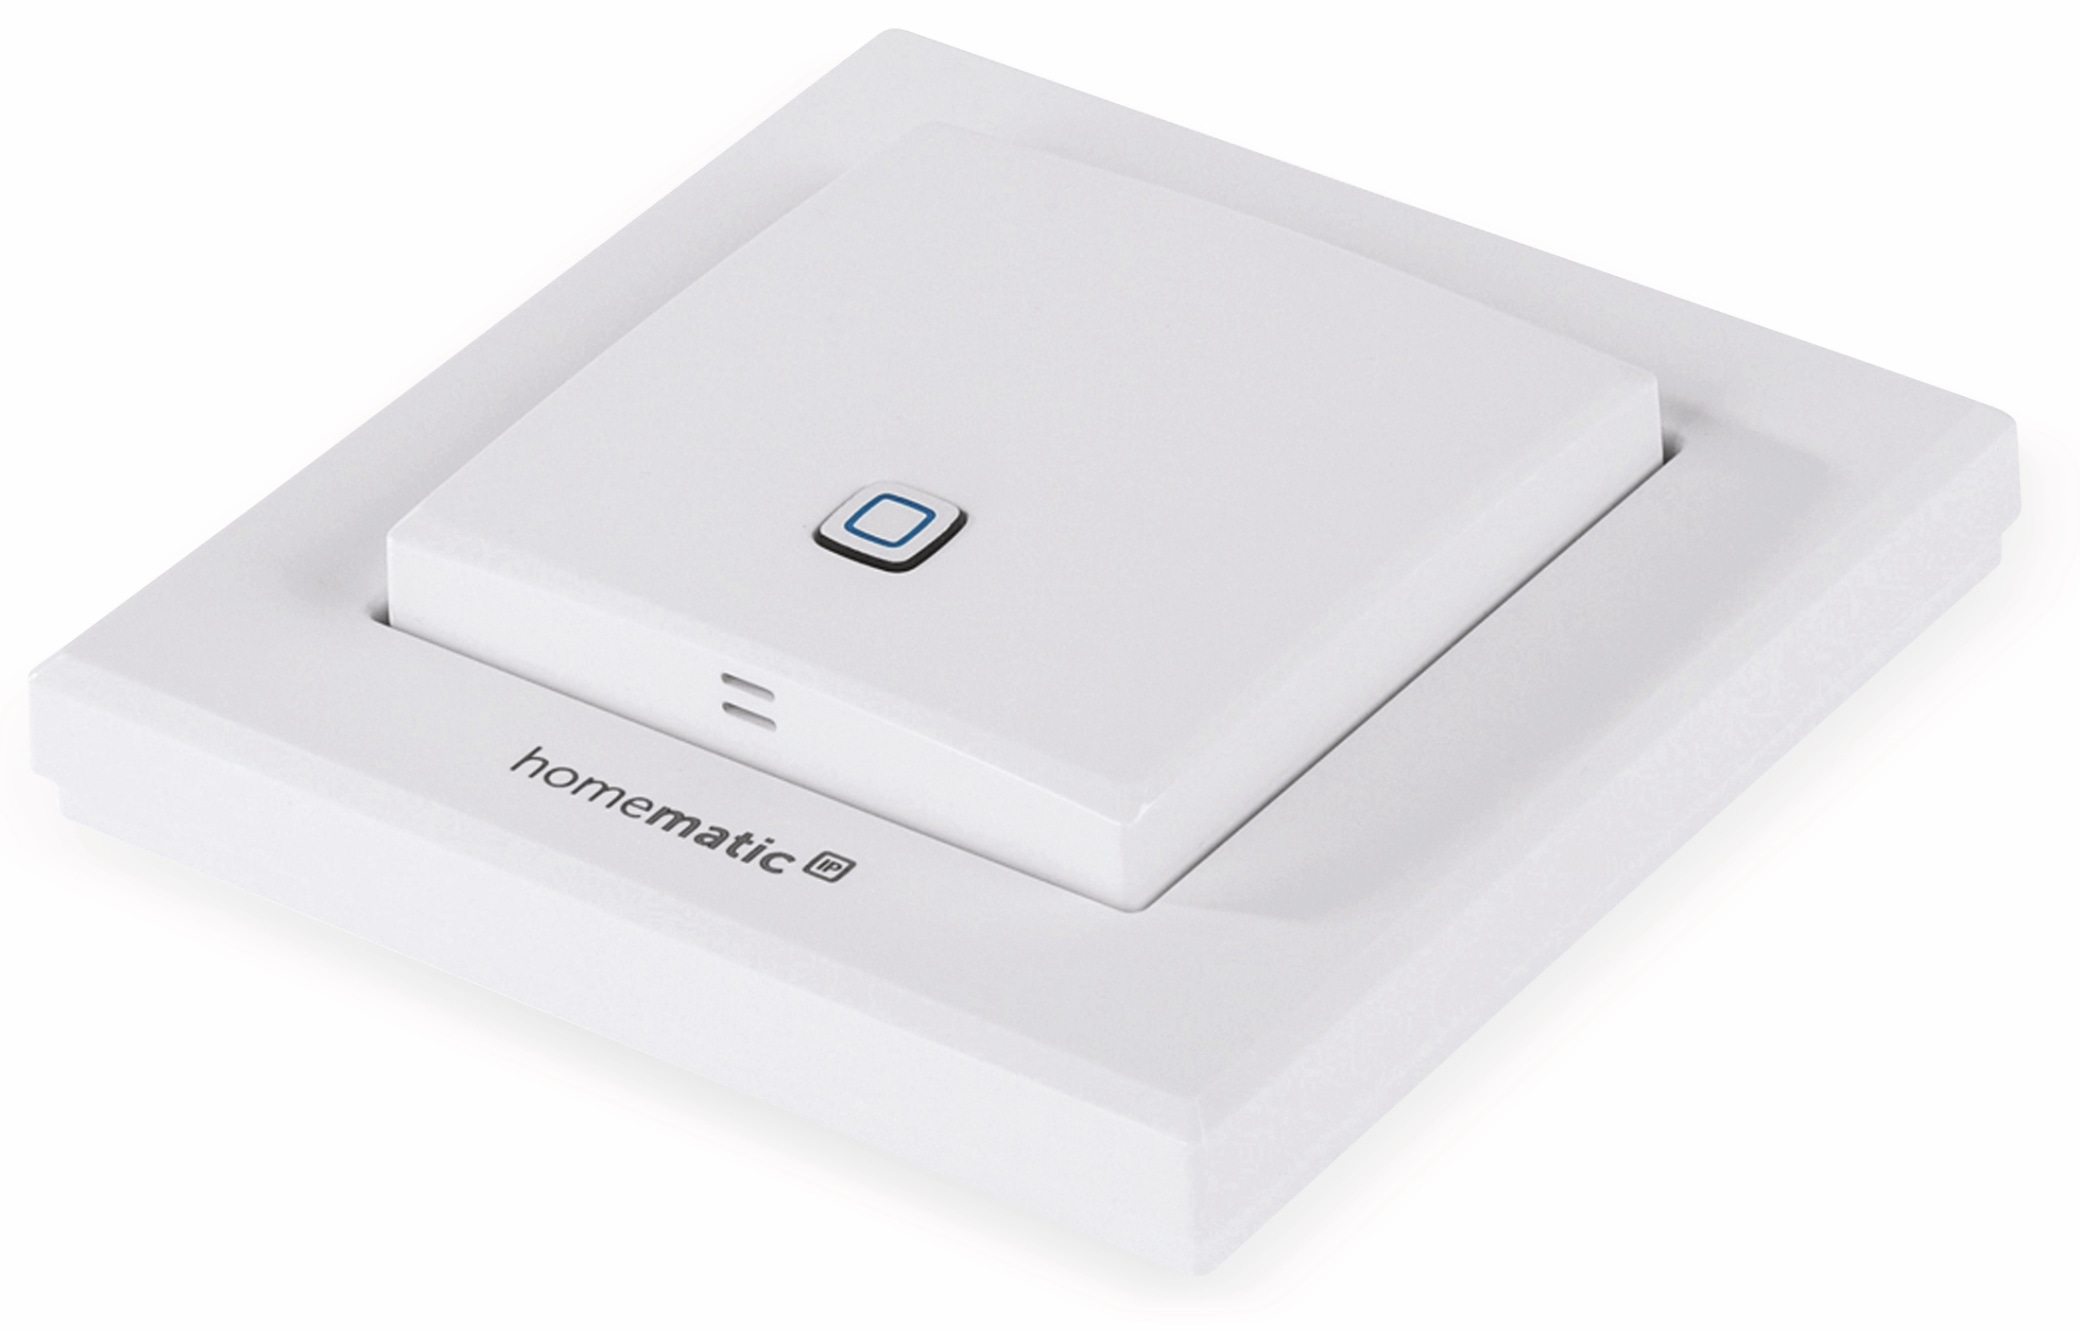 HOMEMATIC IP Smart Home 150181A0, Temp. und Luftfeucht. Sensor